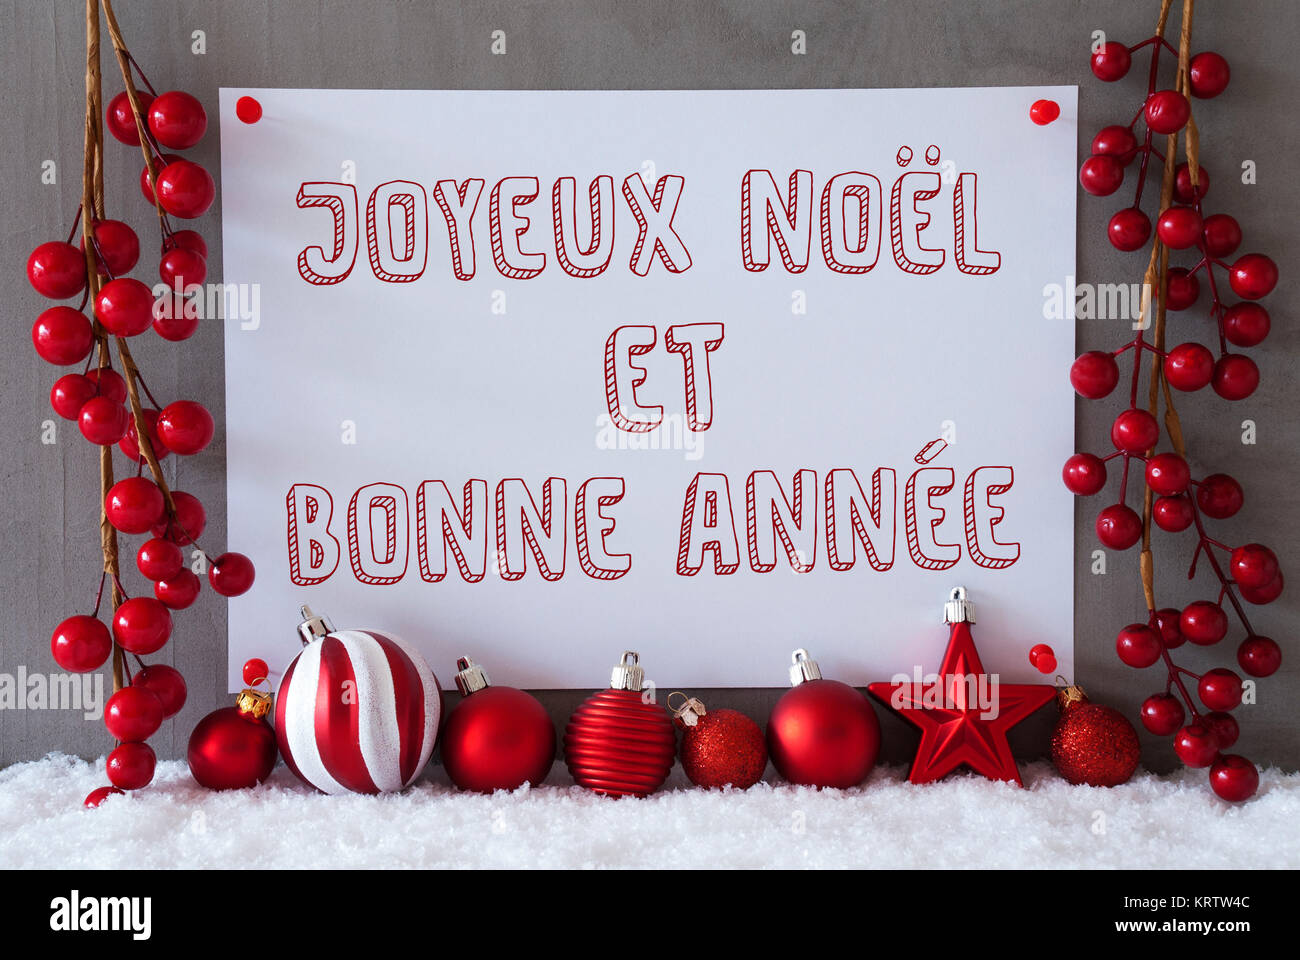 Etichetta con testo francese Joyeux Noel et bonne Annee significa Buon  Natale e Felice Anno Nuovo. Red decorazione di Natale come sfere sulla  neve. Urbano moderno e parete in cemento come sfondo